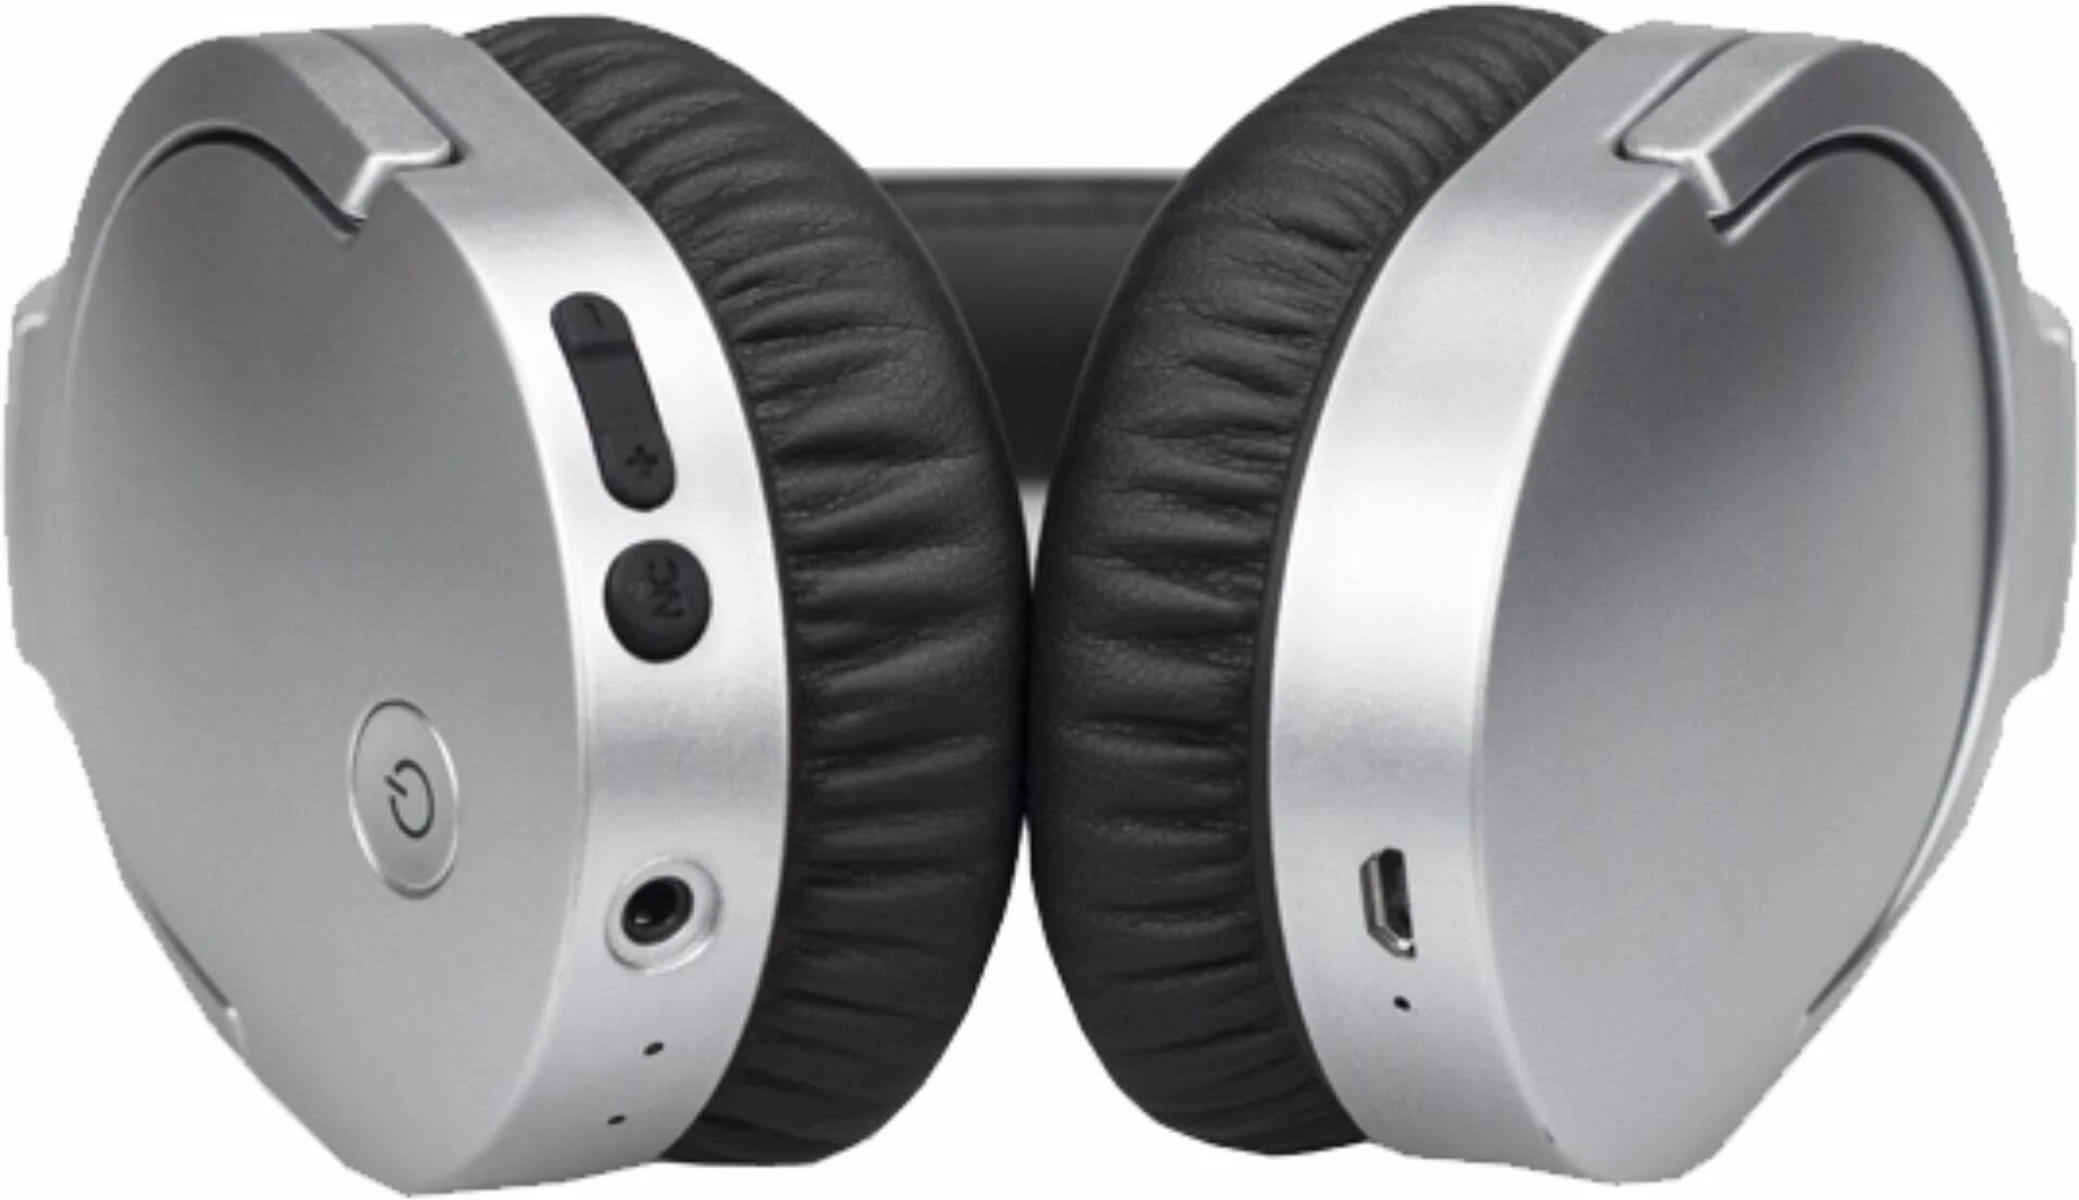 DENVER BTN-207 SAND, Kopfhörer Over-ear Creme Bluetooth